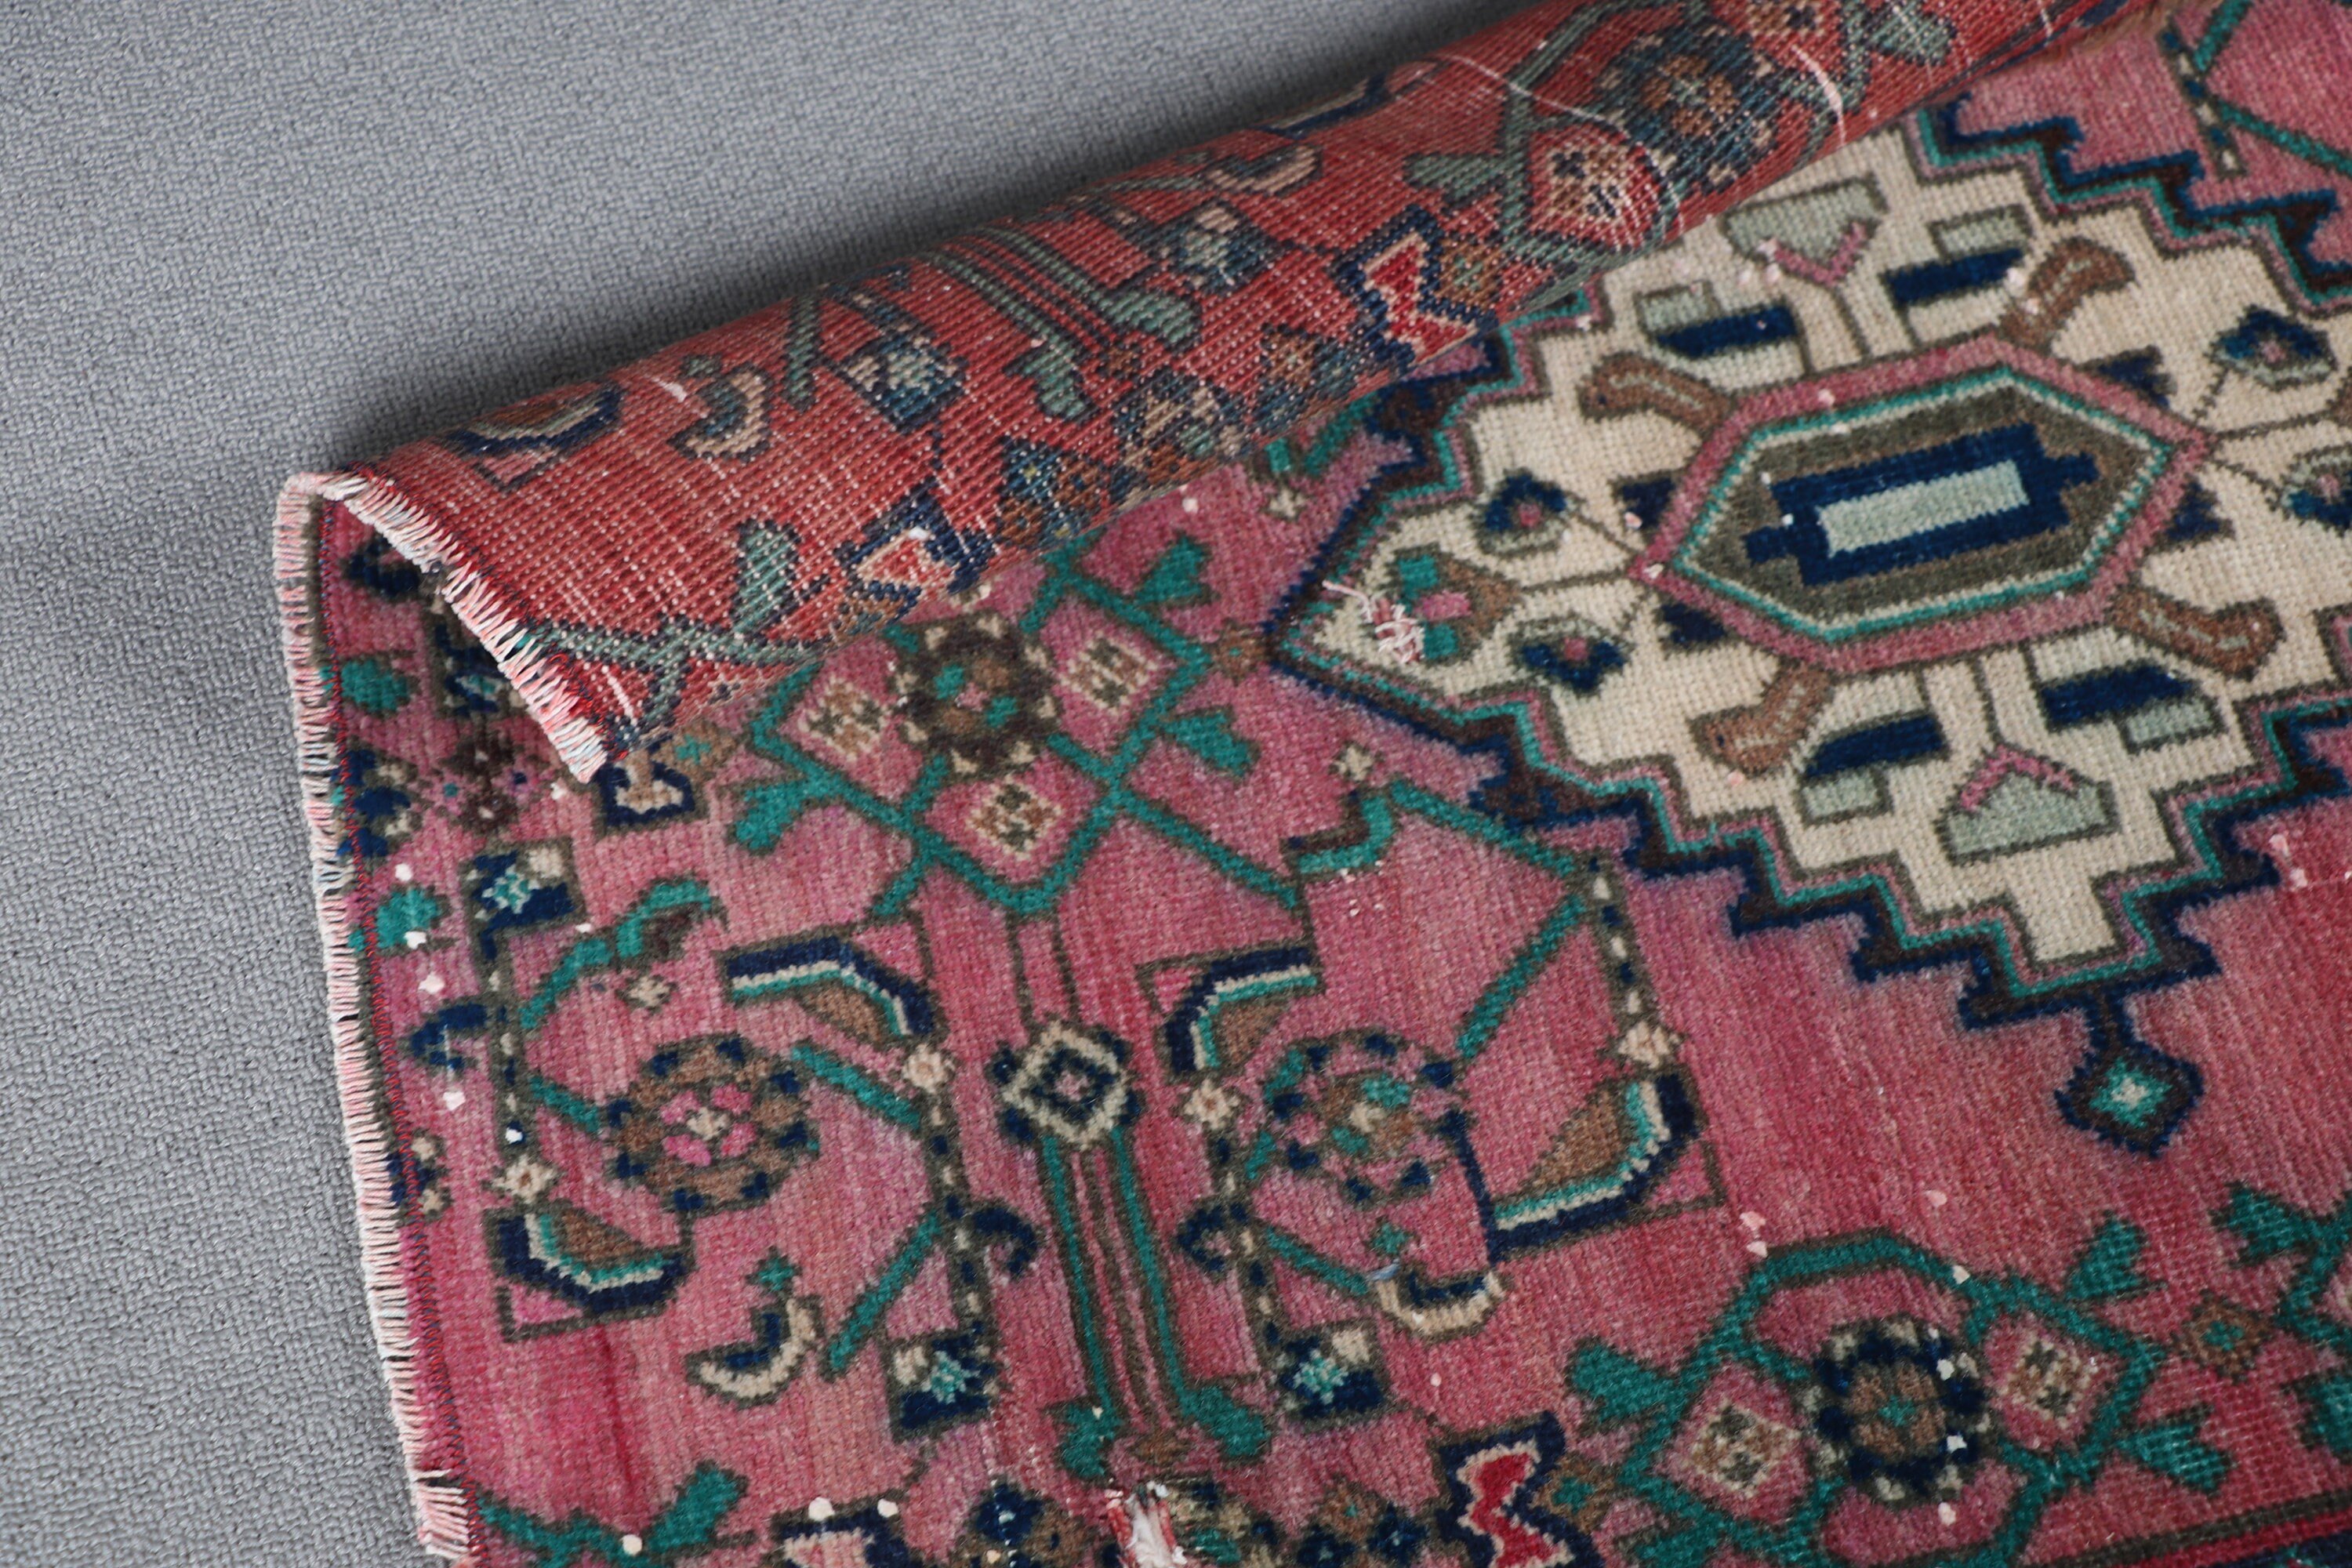 Bath Rug, Oushak Rugs, Pink Moroccan Rugs, Wool Rugs, Door Mat Rug, Rugs for Nursery, 2.2x5.2 ft Small Rug, Turkish Rug, Vintage Rugs